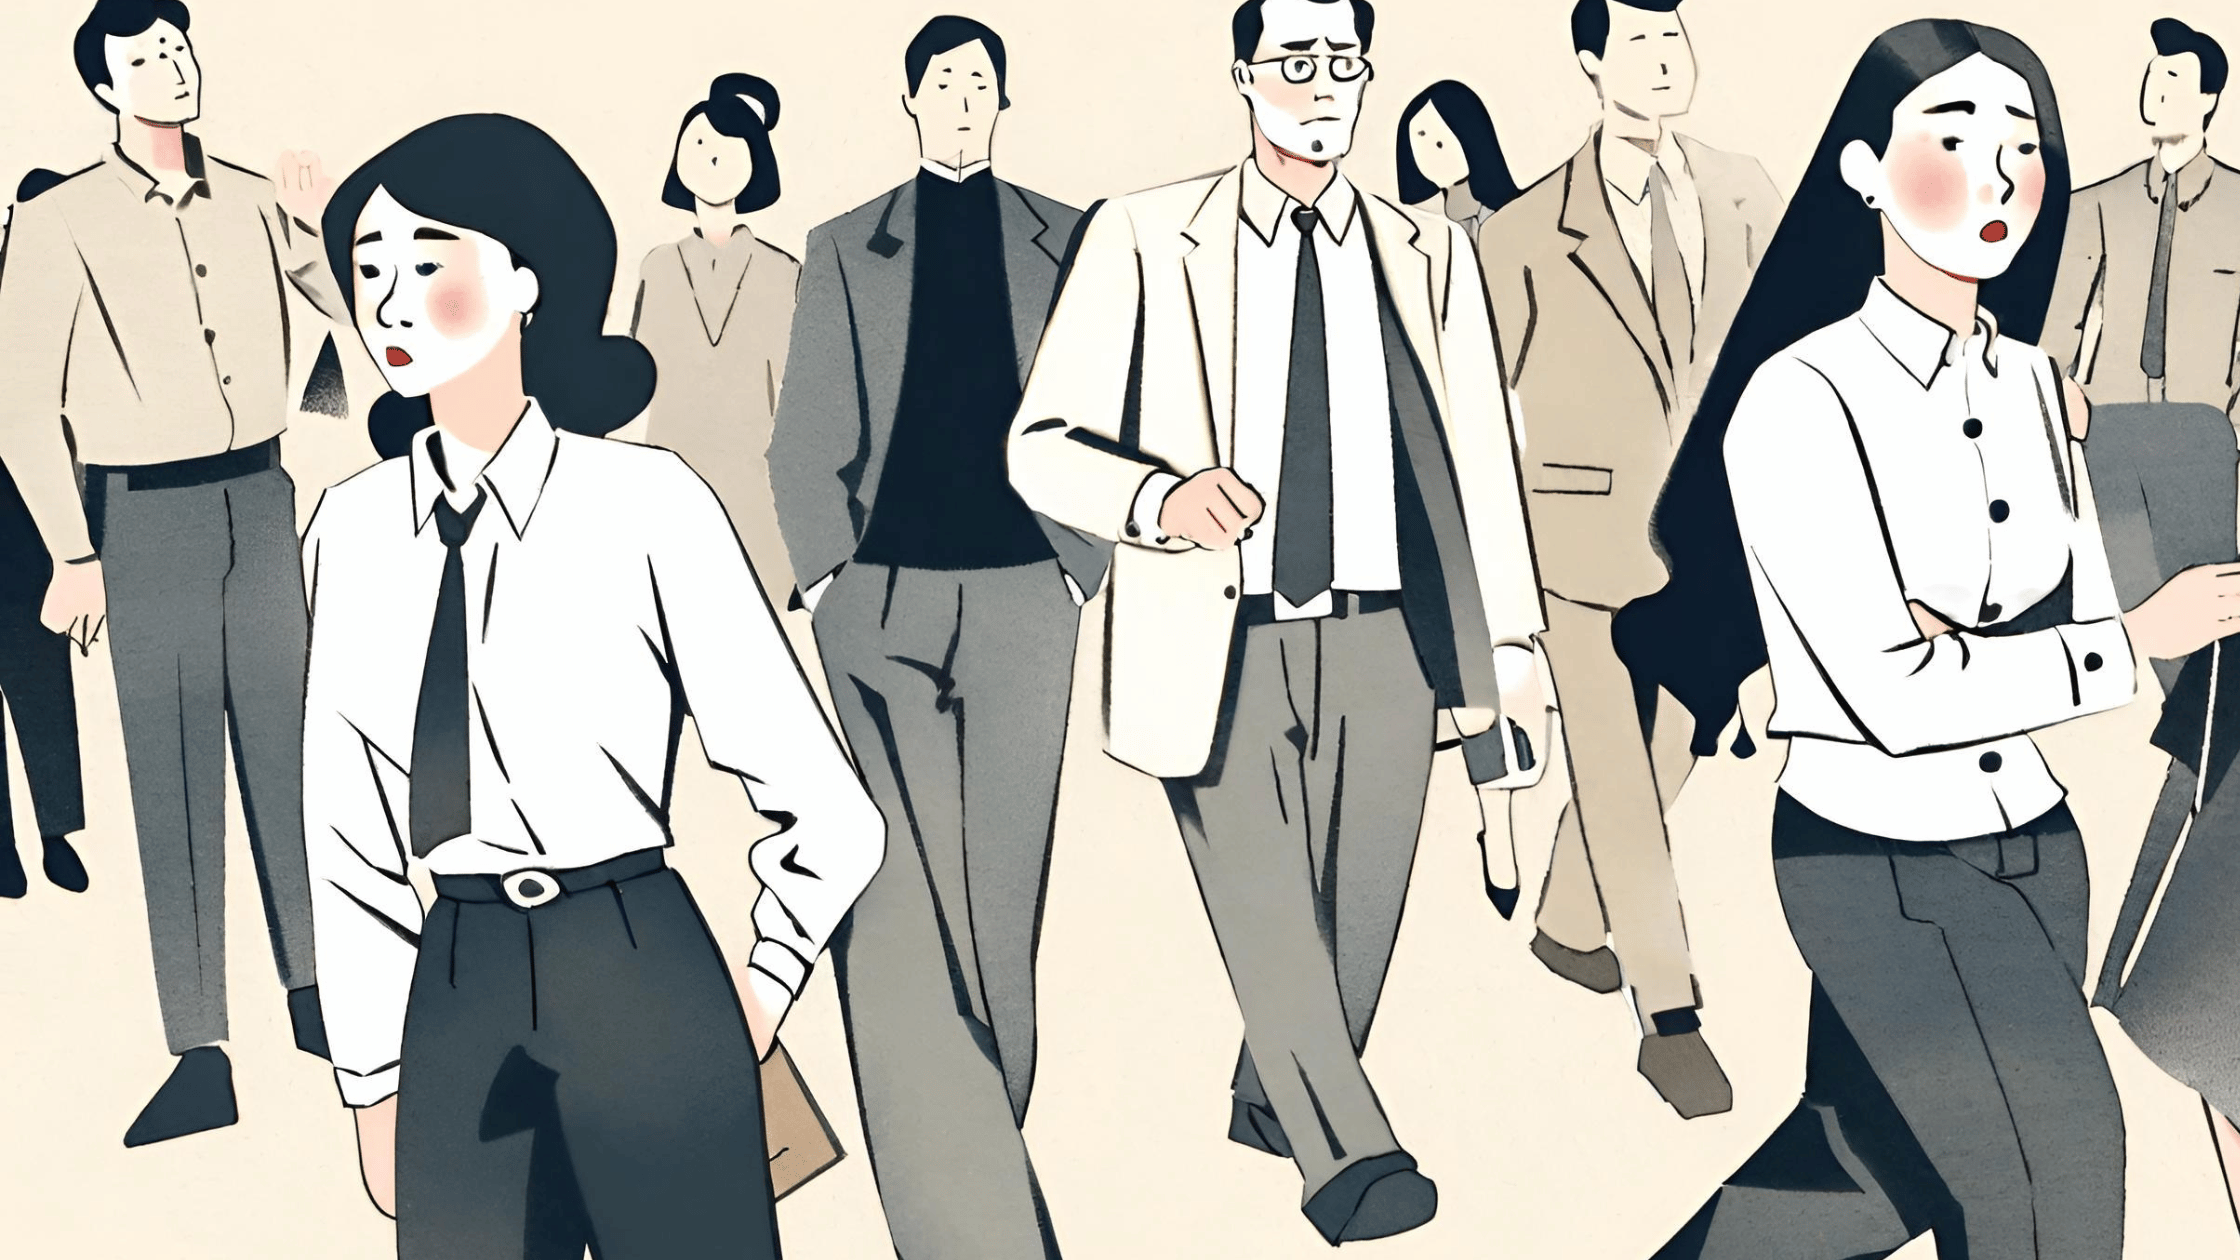 「働きたくない」の感情を理解する: 50代会社員の内なる戦い